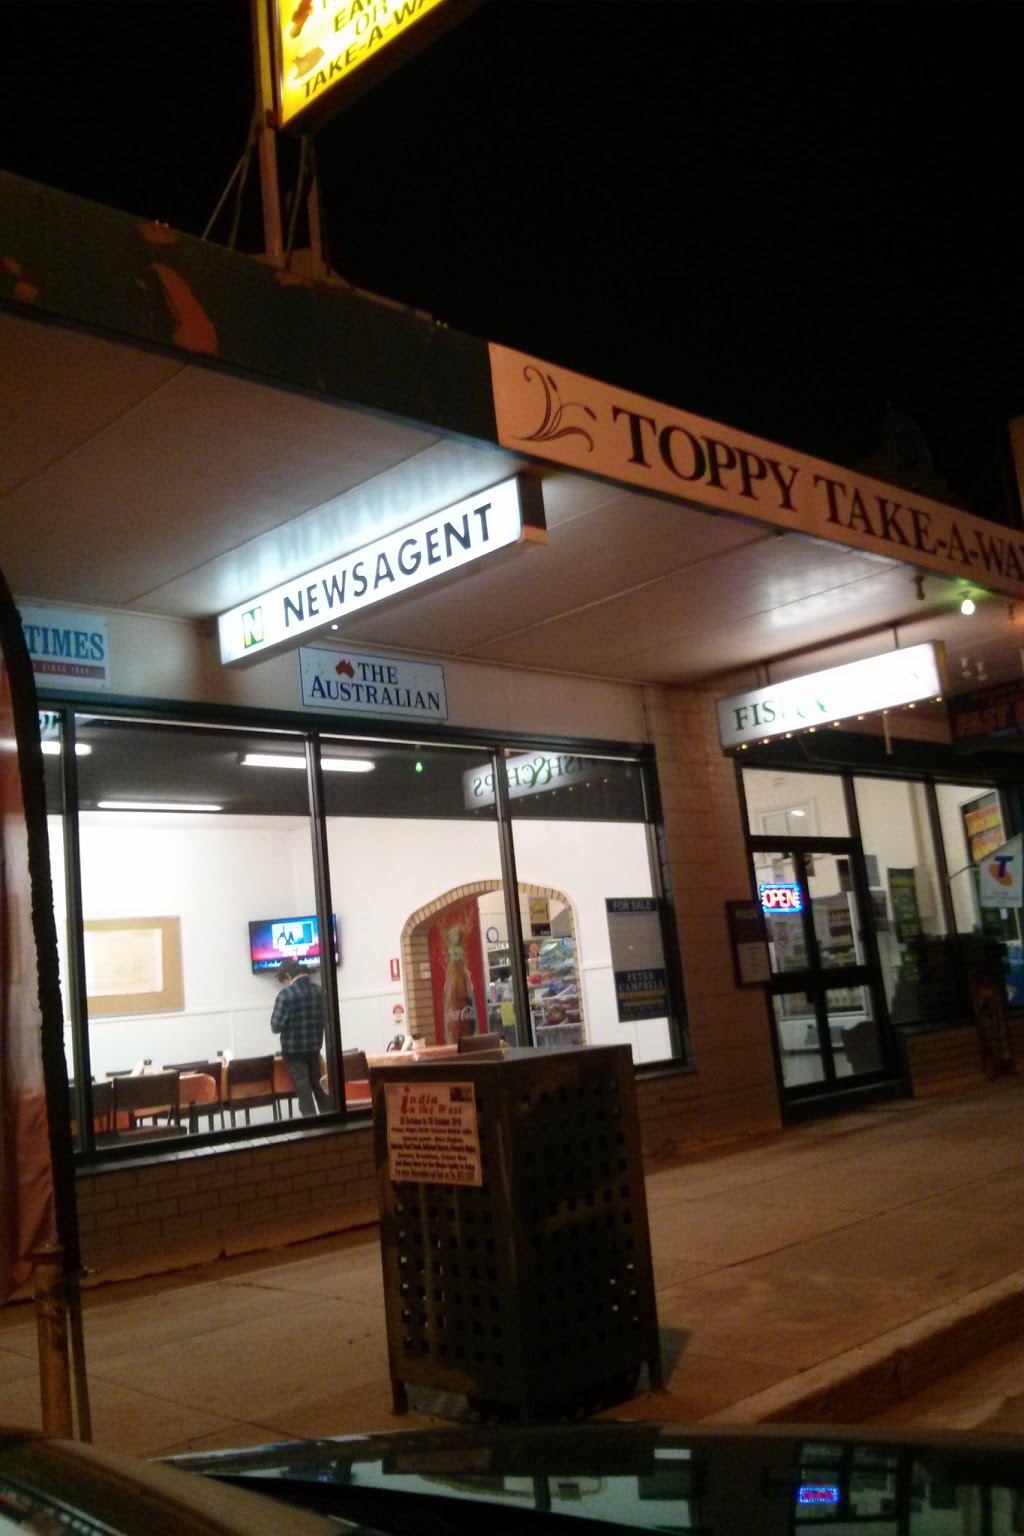 Toppy Take Away and Newsagency | restaurant | 71 Neeld St, Wyalong NSW 2671, Australia | 0269723535 OR +61 2 6972 3535